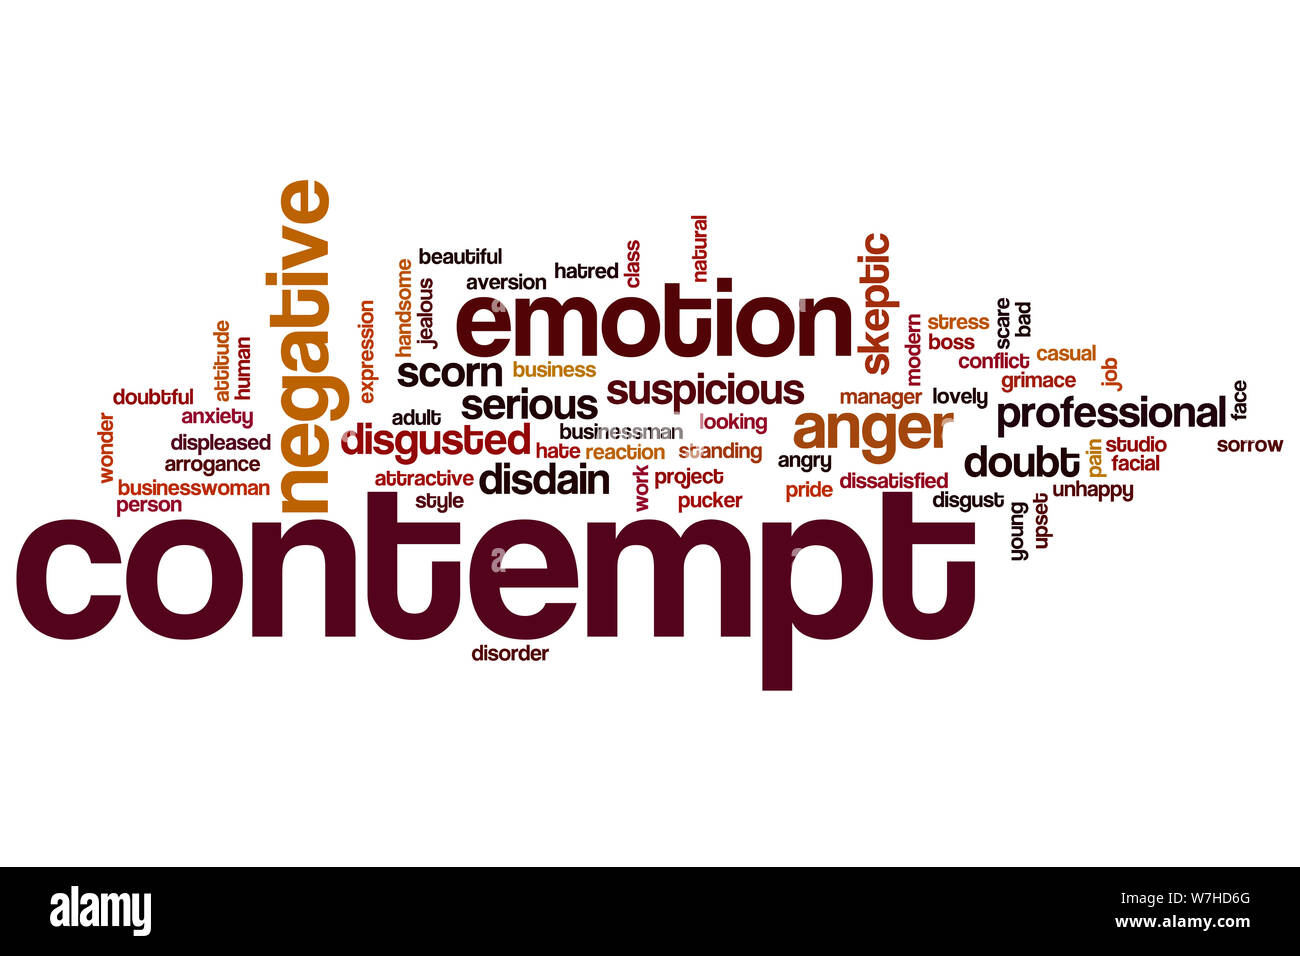 Contempt word cloud concept Stock Photo